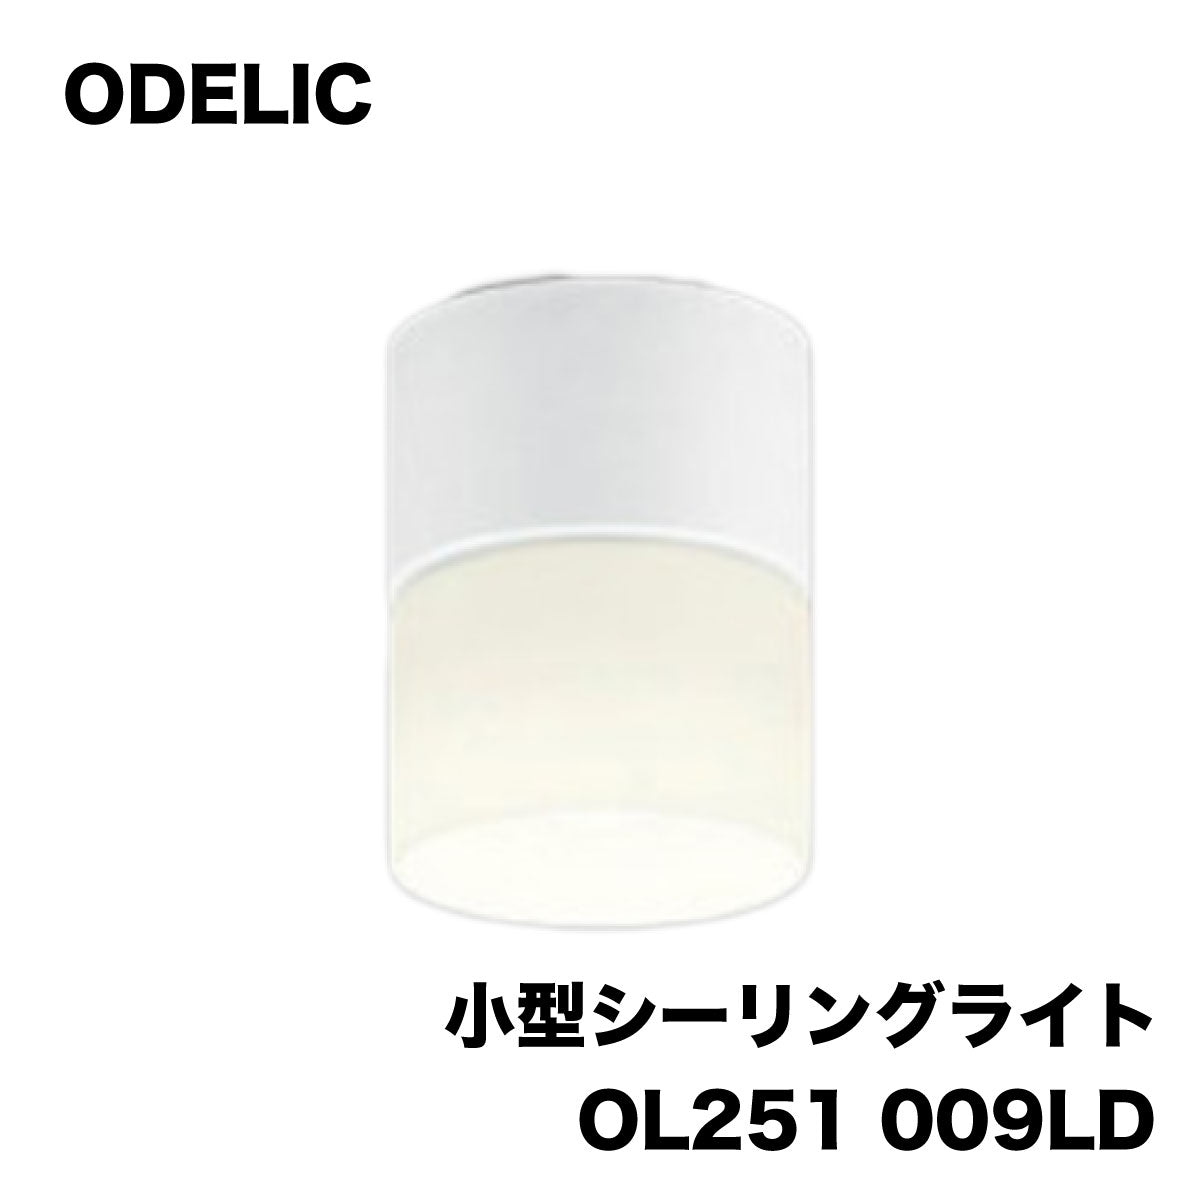 【未使用品】【開封品】【中古A】 ODELIC 小型シーリングライト OL251-009LD 未使用アウトレット品